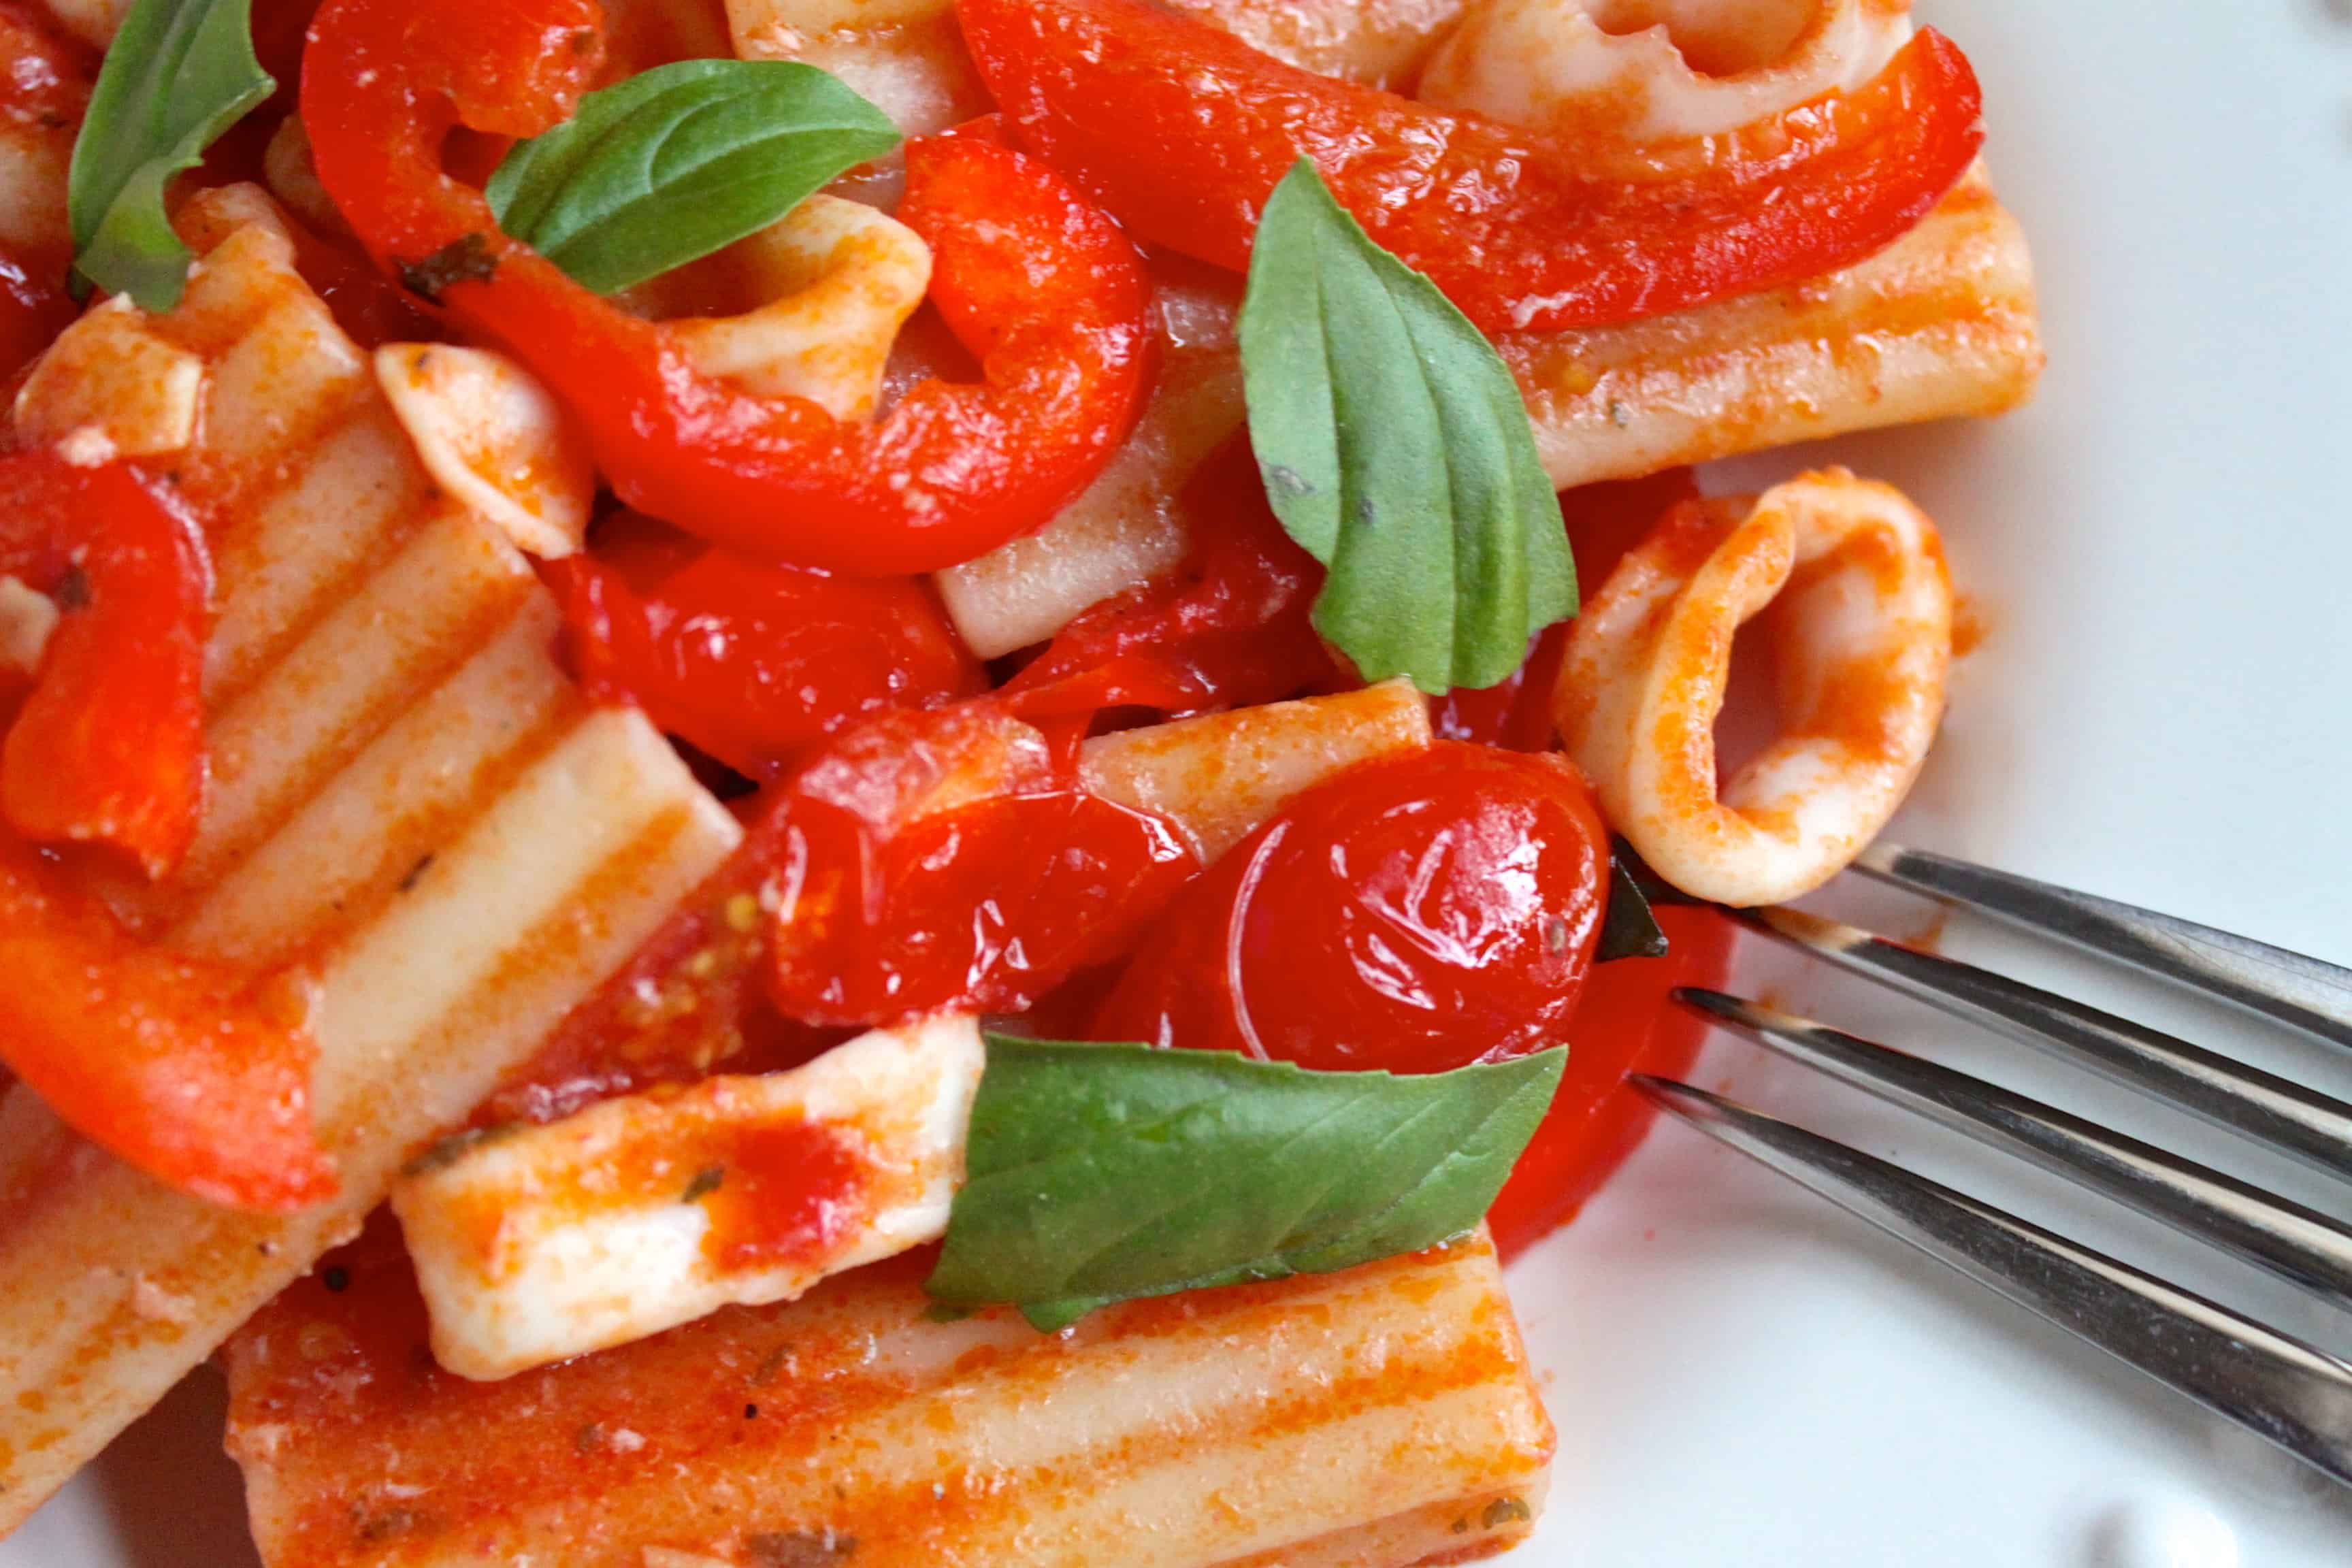 Pasta with Calamari and Red Sauce